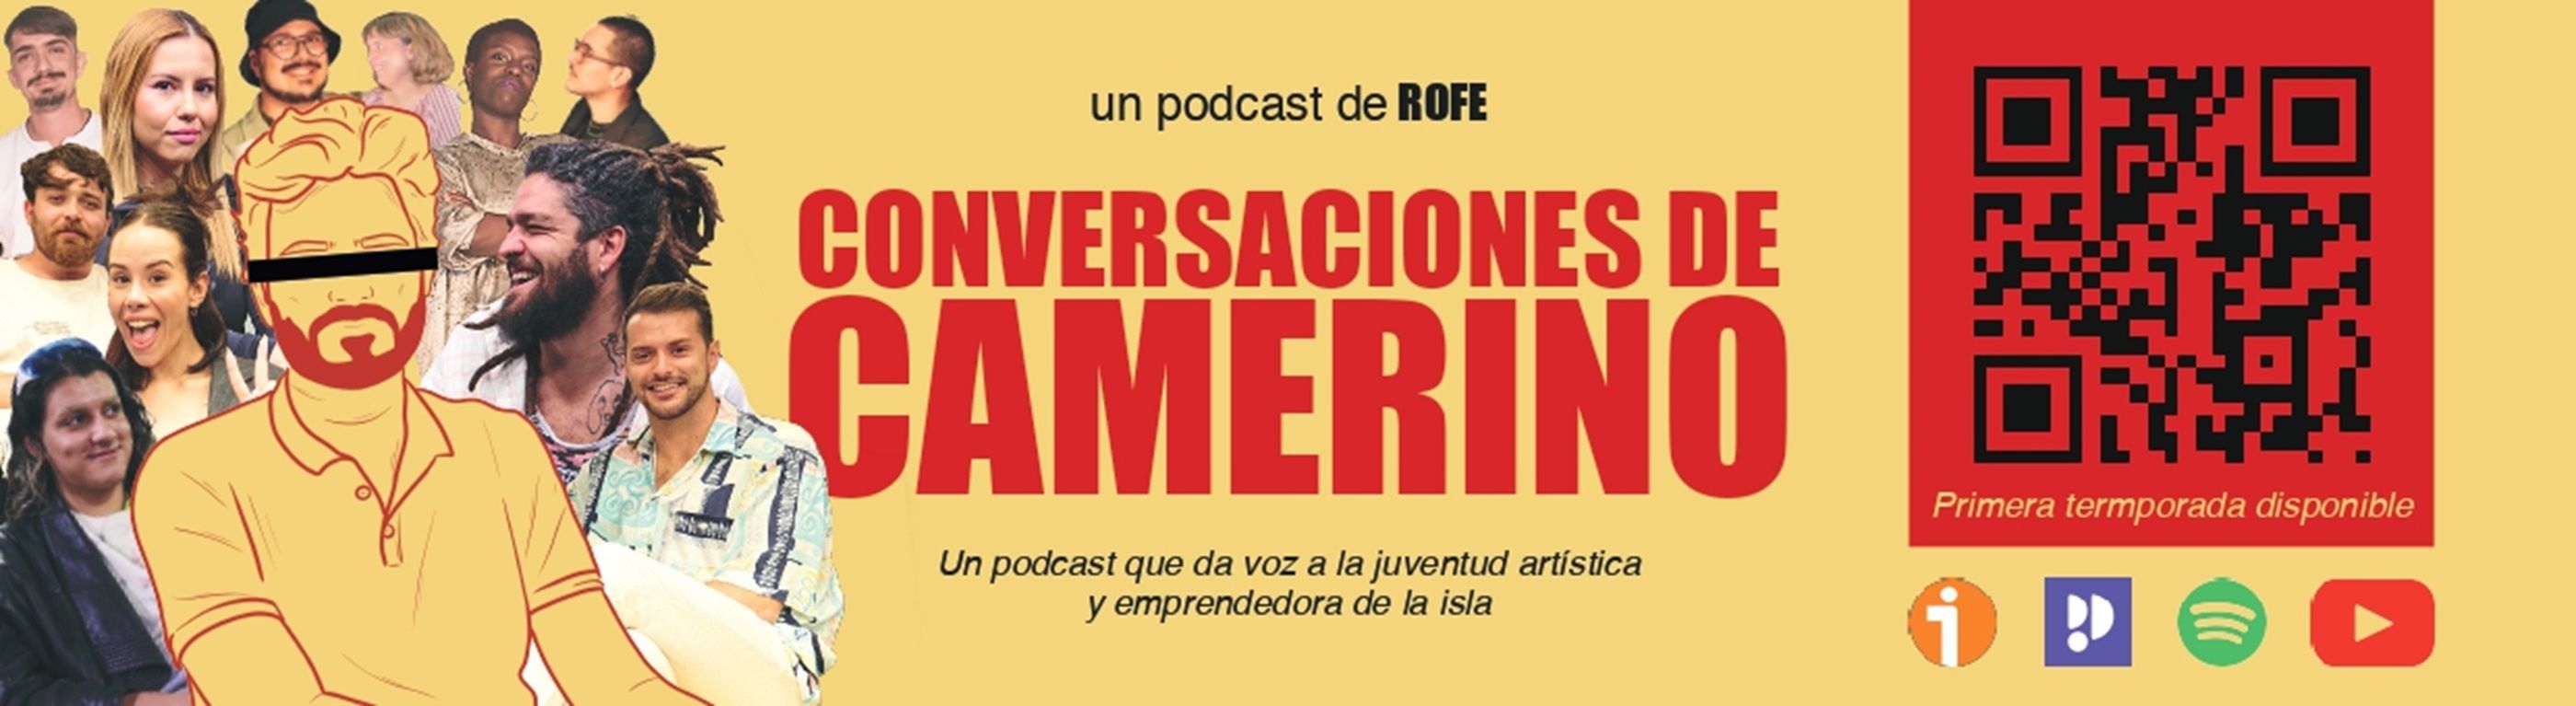 Cartel del podcast 'Conversaciones de Camerino'